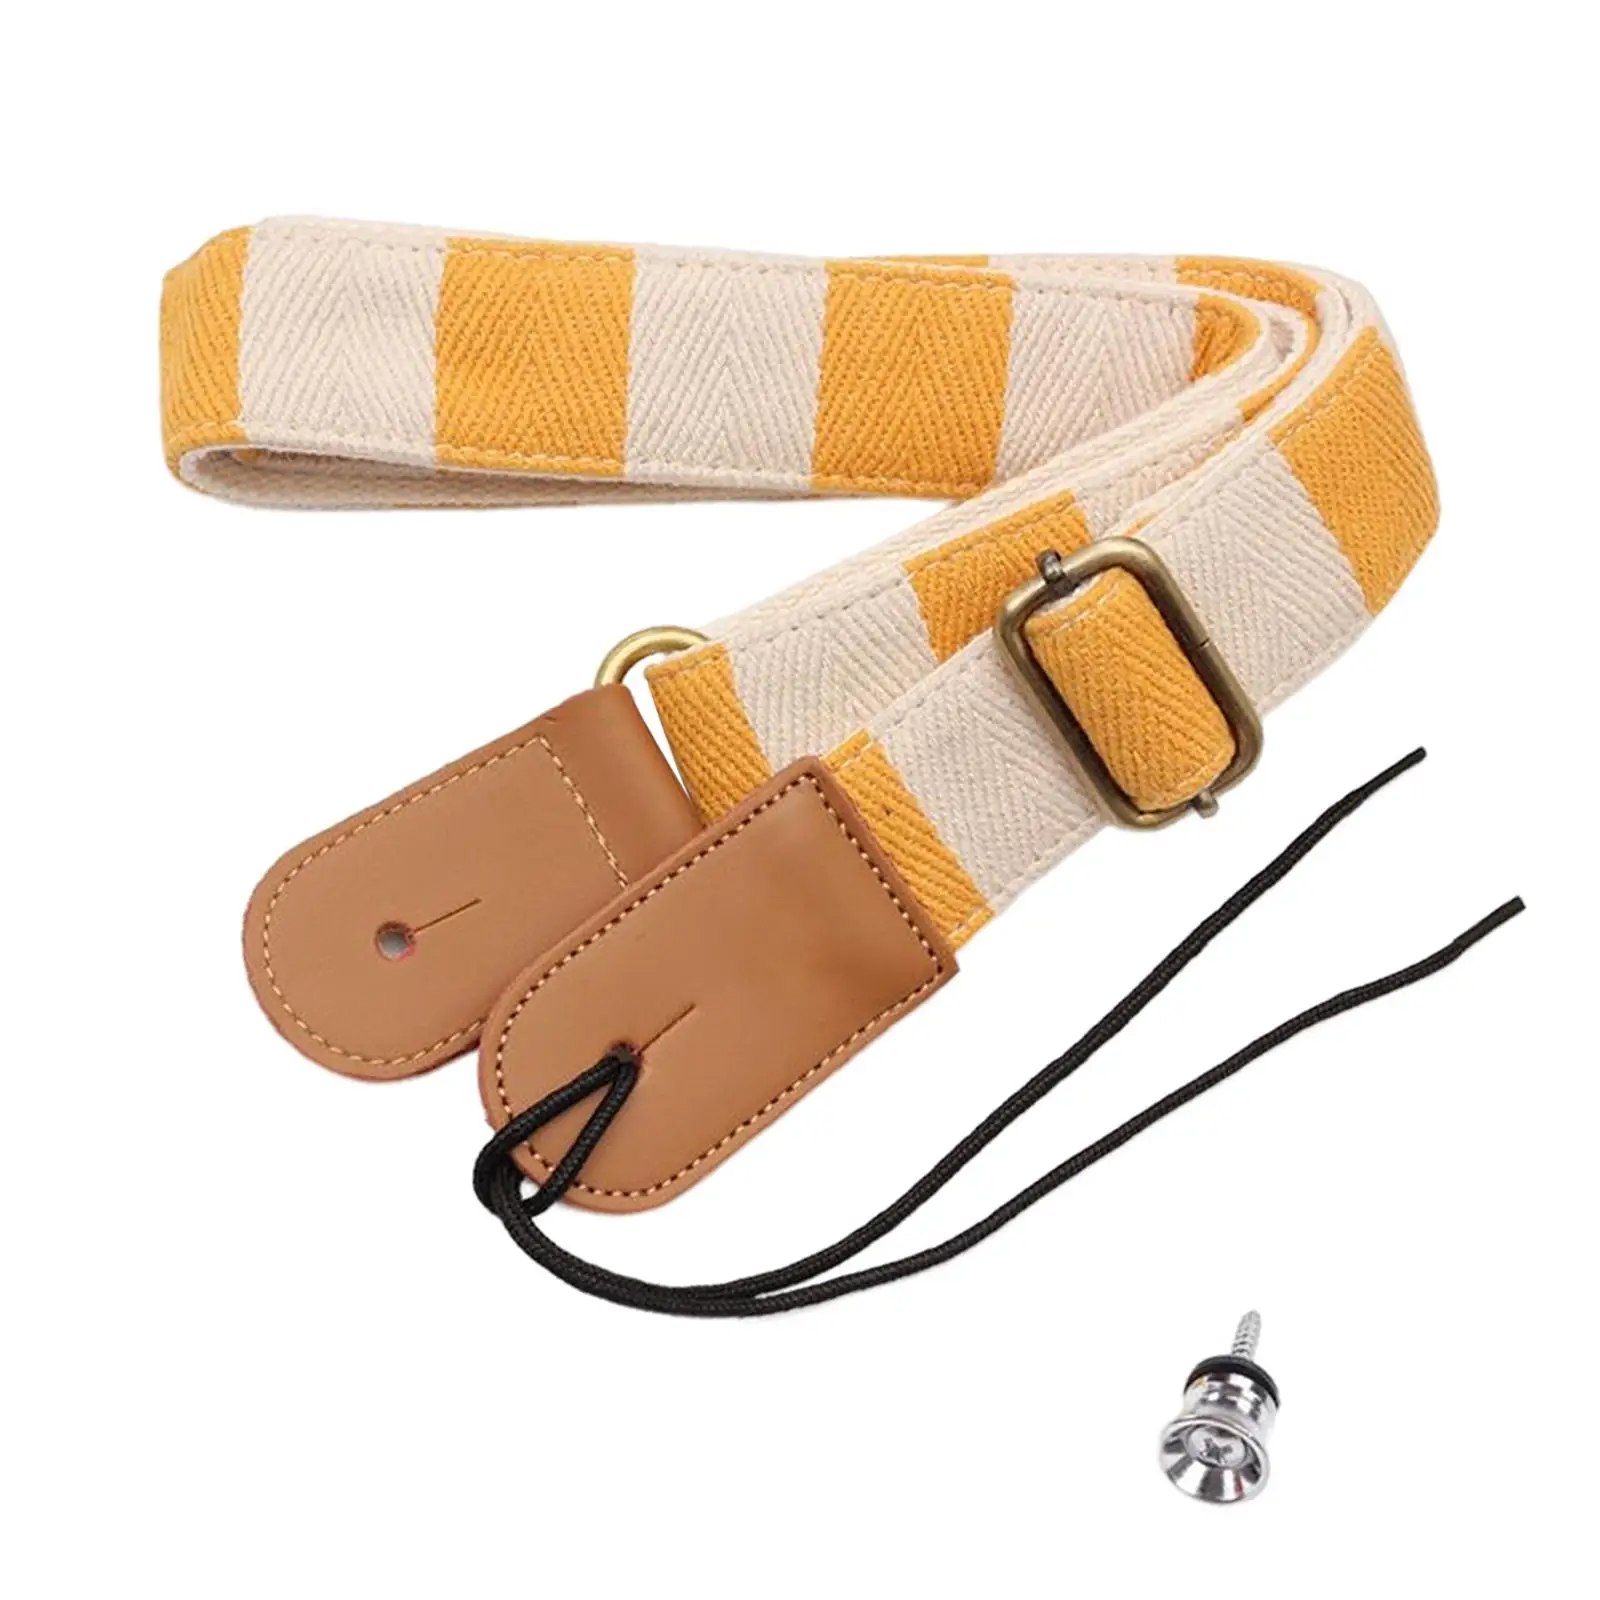 Adjustable Ukulele Strap Fashionable Stringed Instrument Accessory Wear